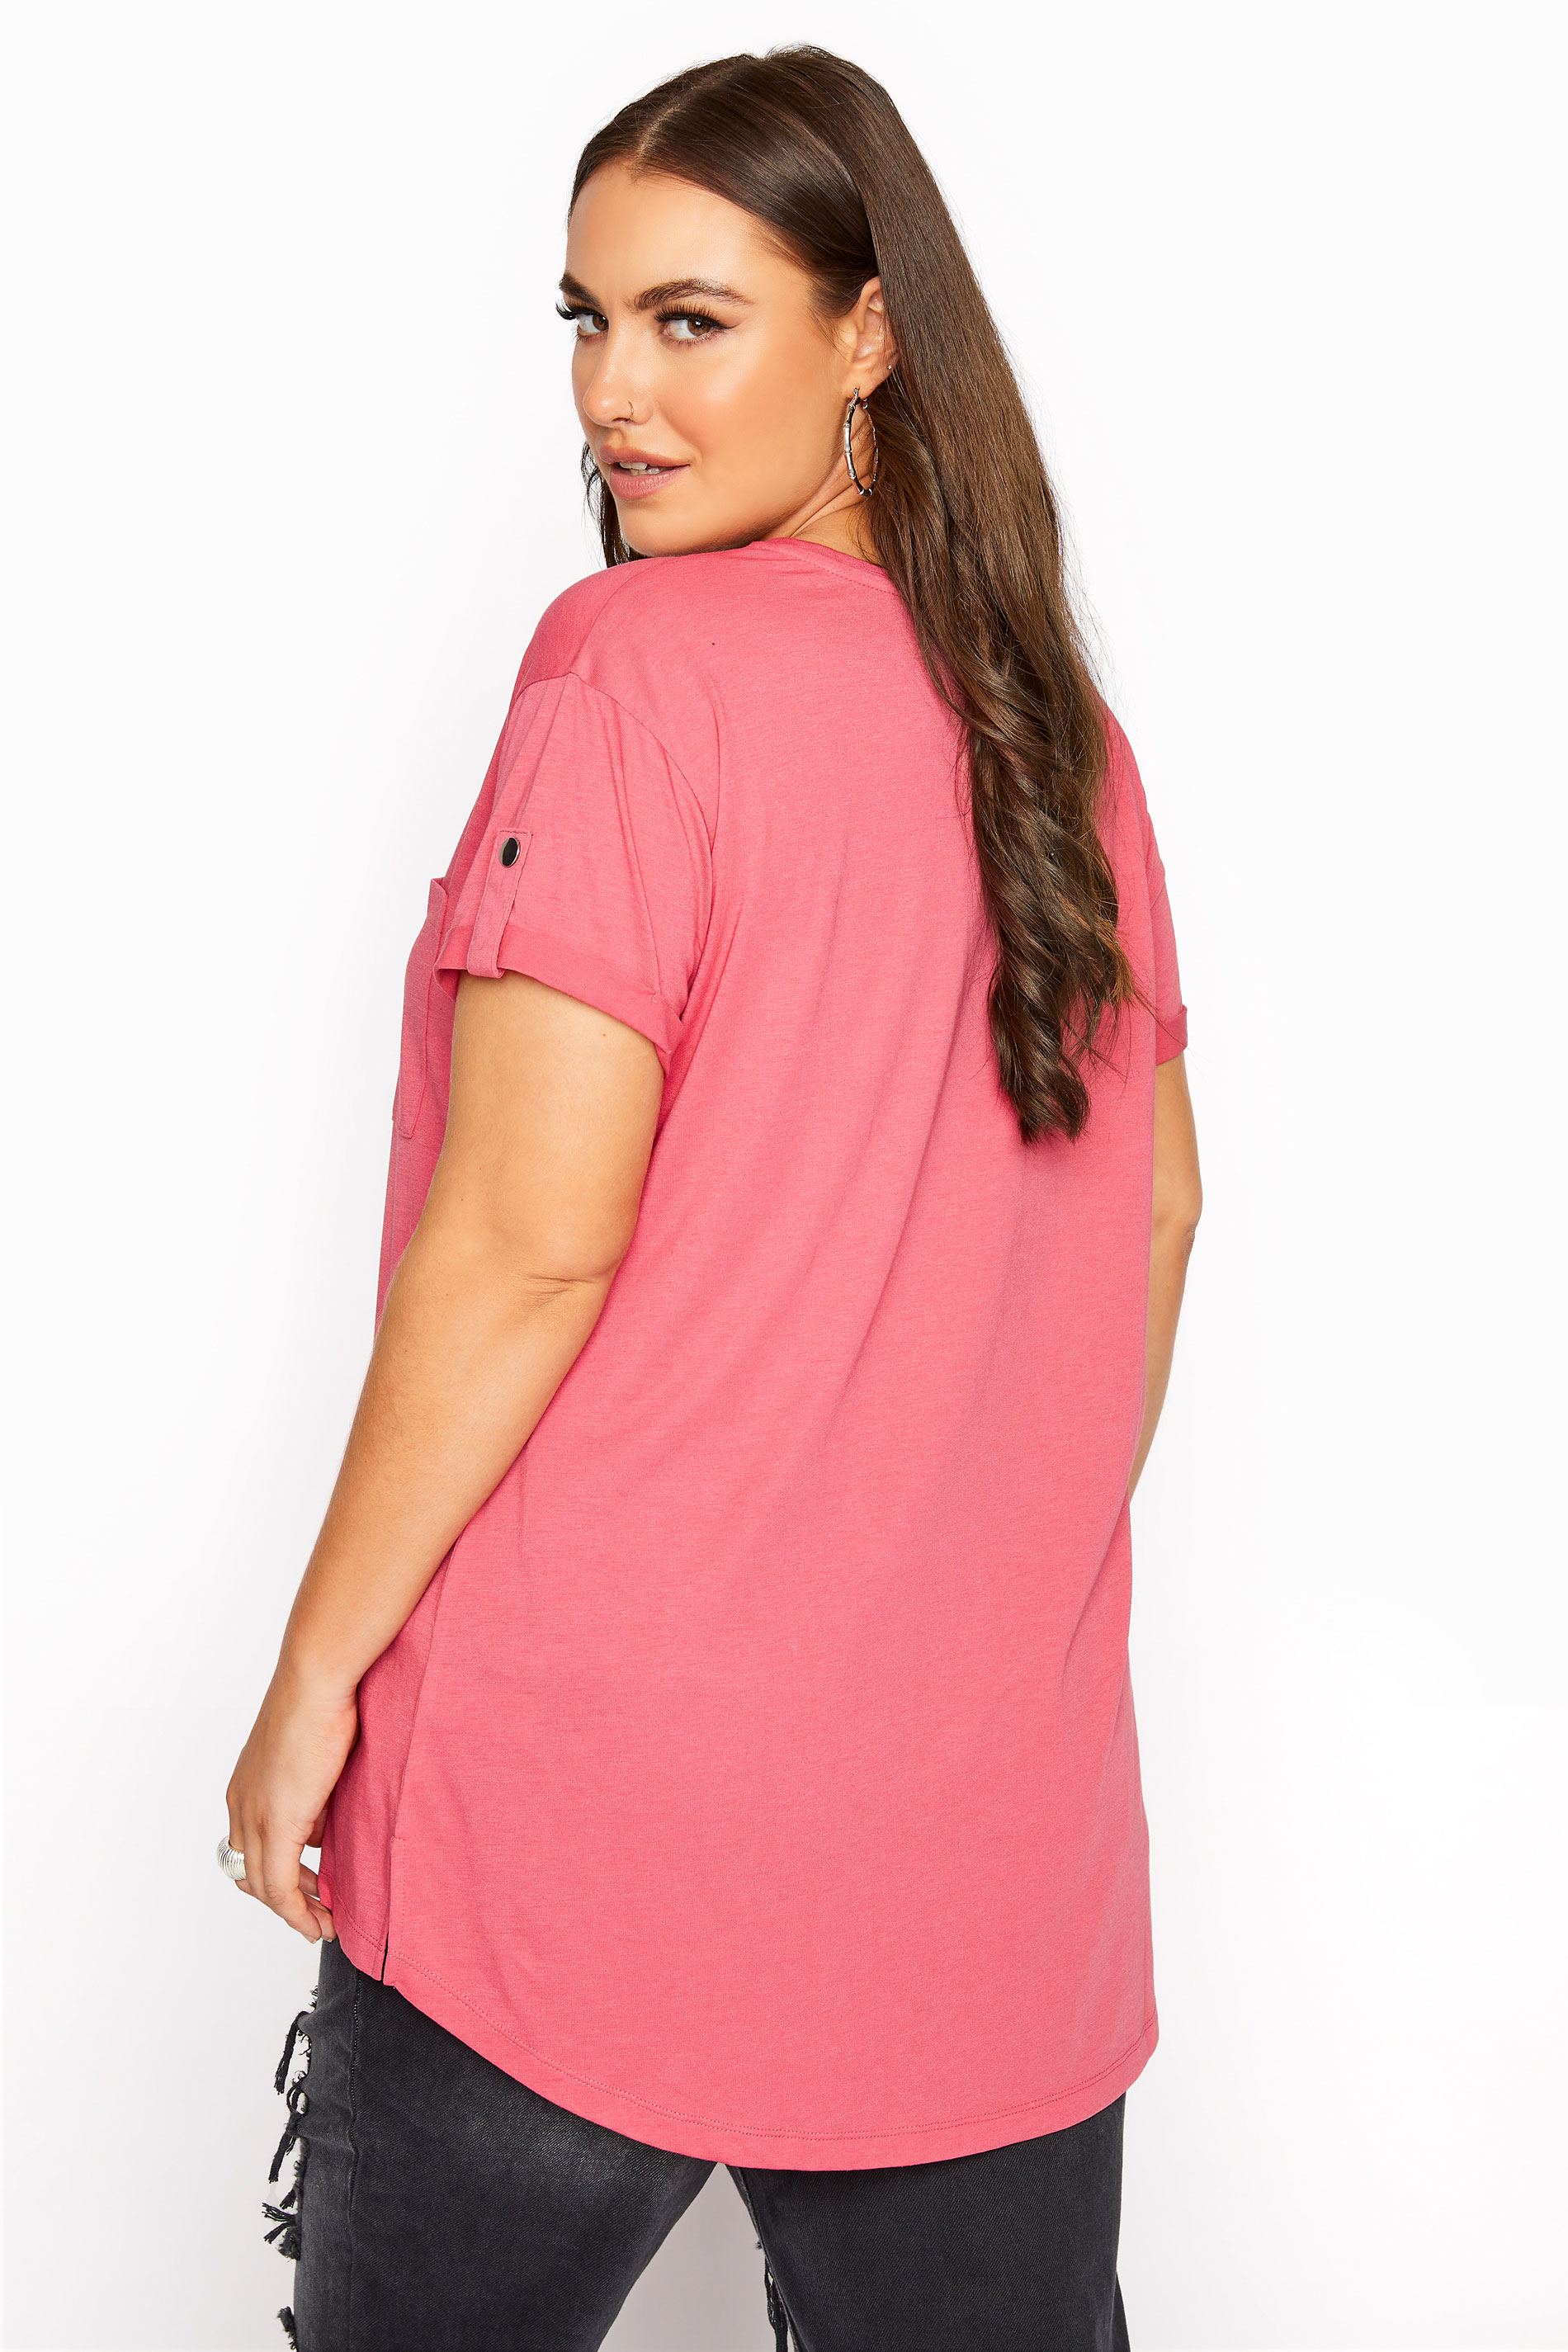 Grande taille  Tops Grande taille  T-Shirts Basiques & Débardeurs | T-Shirt Rose Ourlet Plongeant à Poche - CQ08954